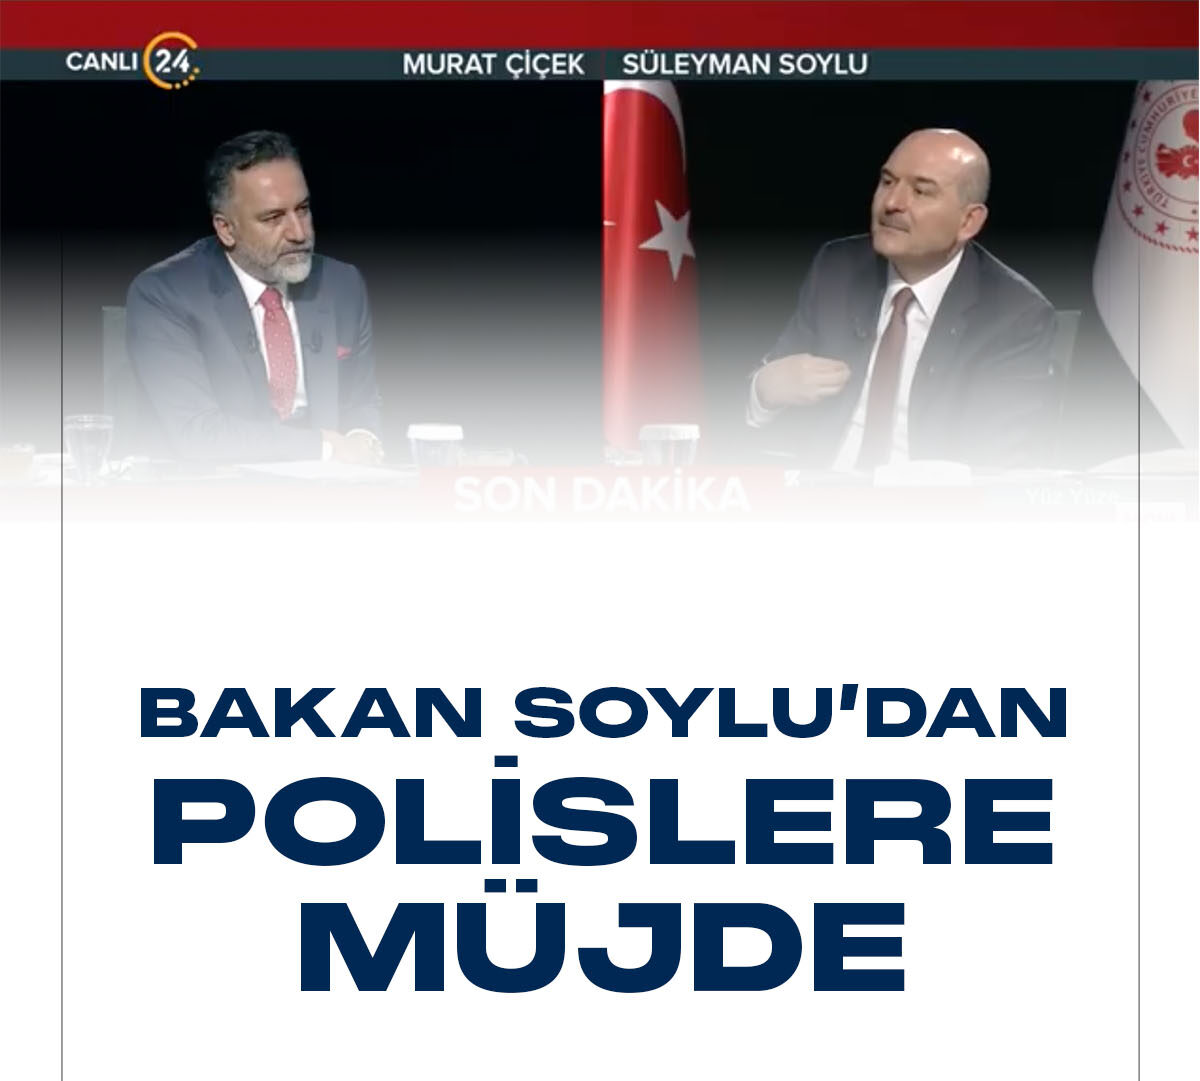 İçişleri Bakanı Süleyman Soylu 24 TV'de katıldığı programında, polislerin çalışma saatlerine ilişkin yeni müjde verdi.